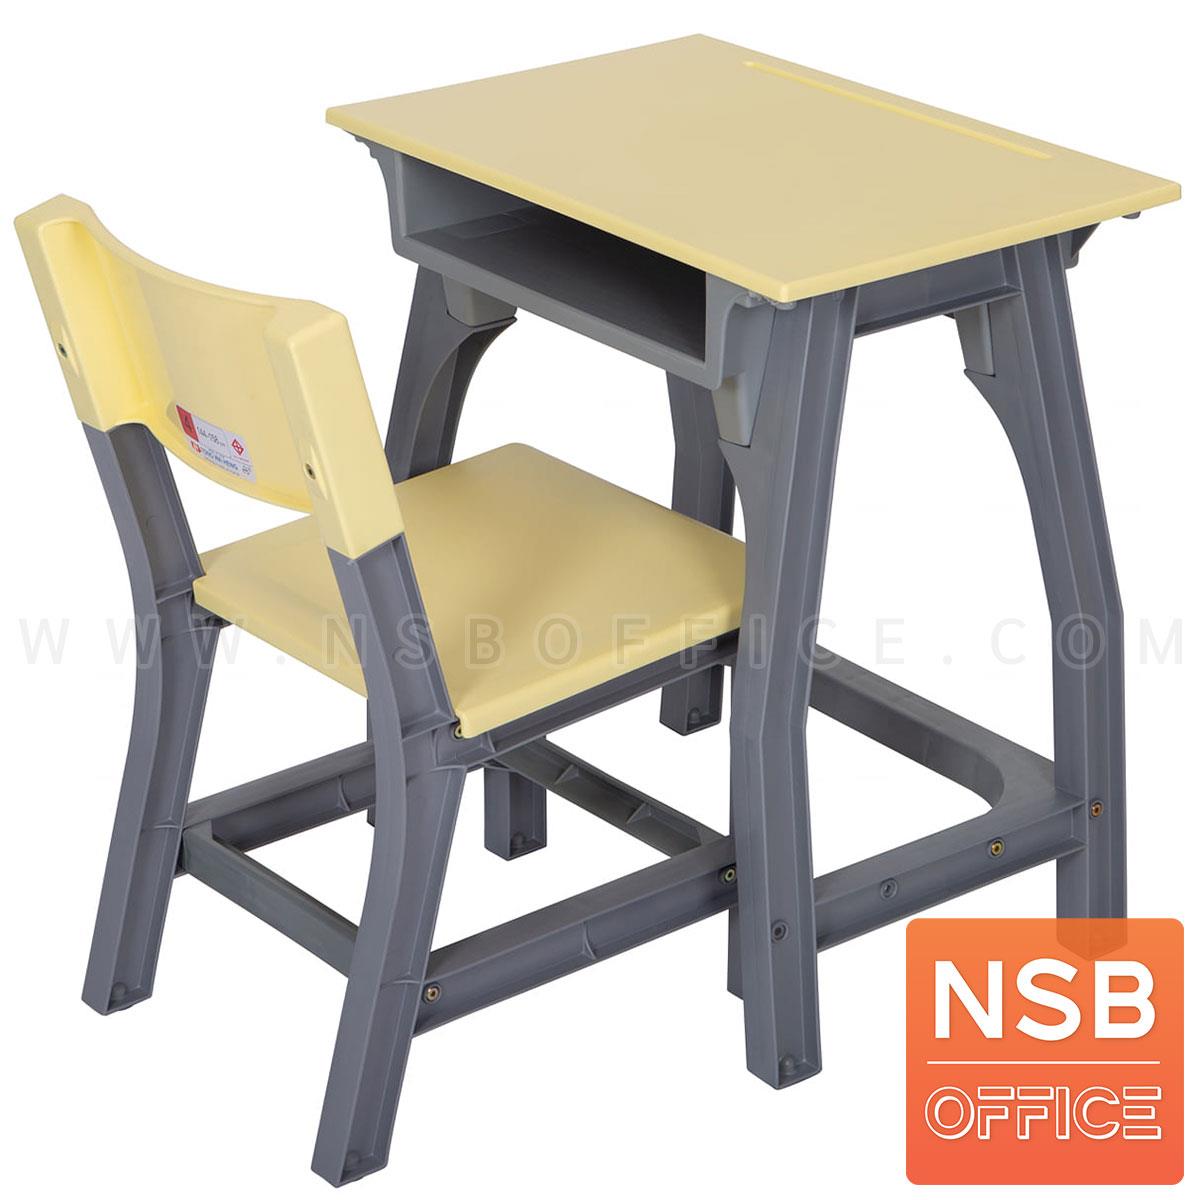 A17A037:ชุดโต๊ะและเก้าอี้นักเรียน รุ่น TH-1M  ระดับชั้นประถม ขาพลาสติก